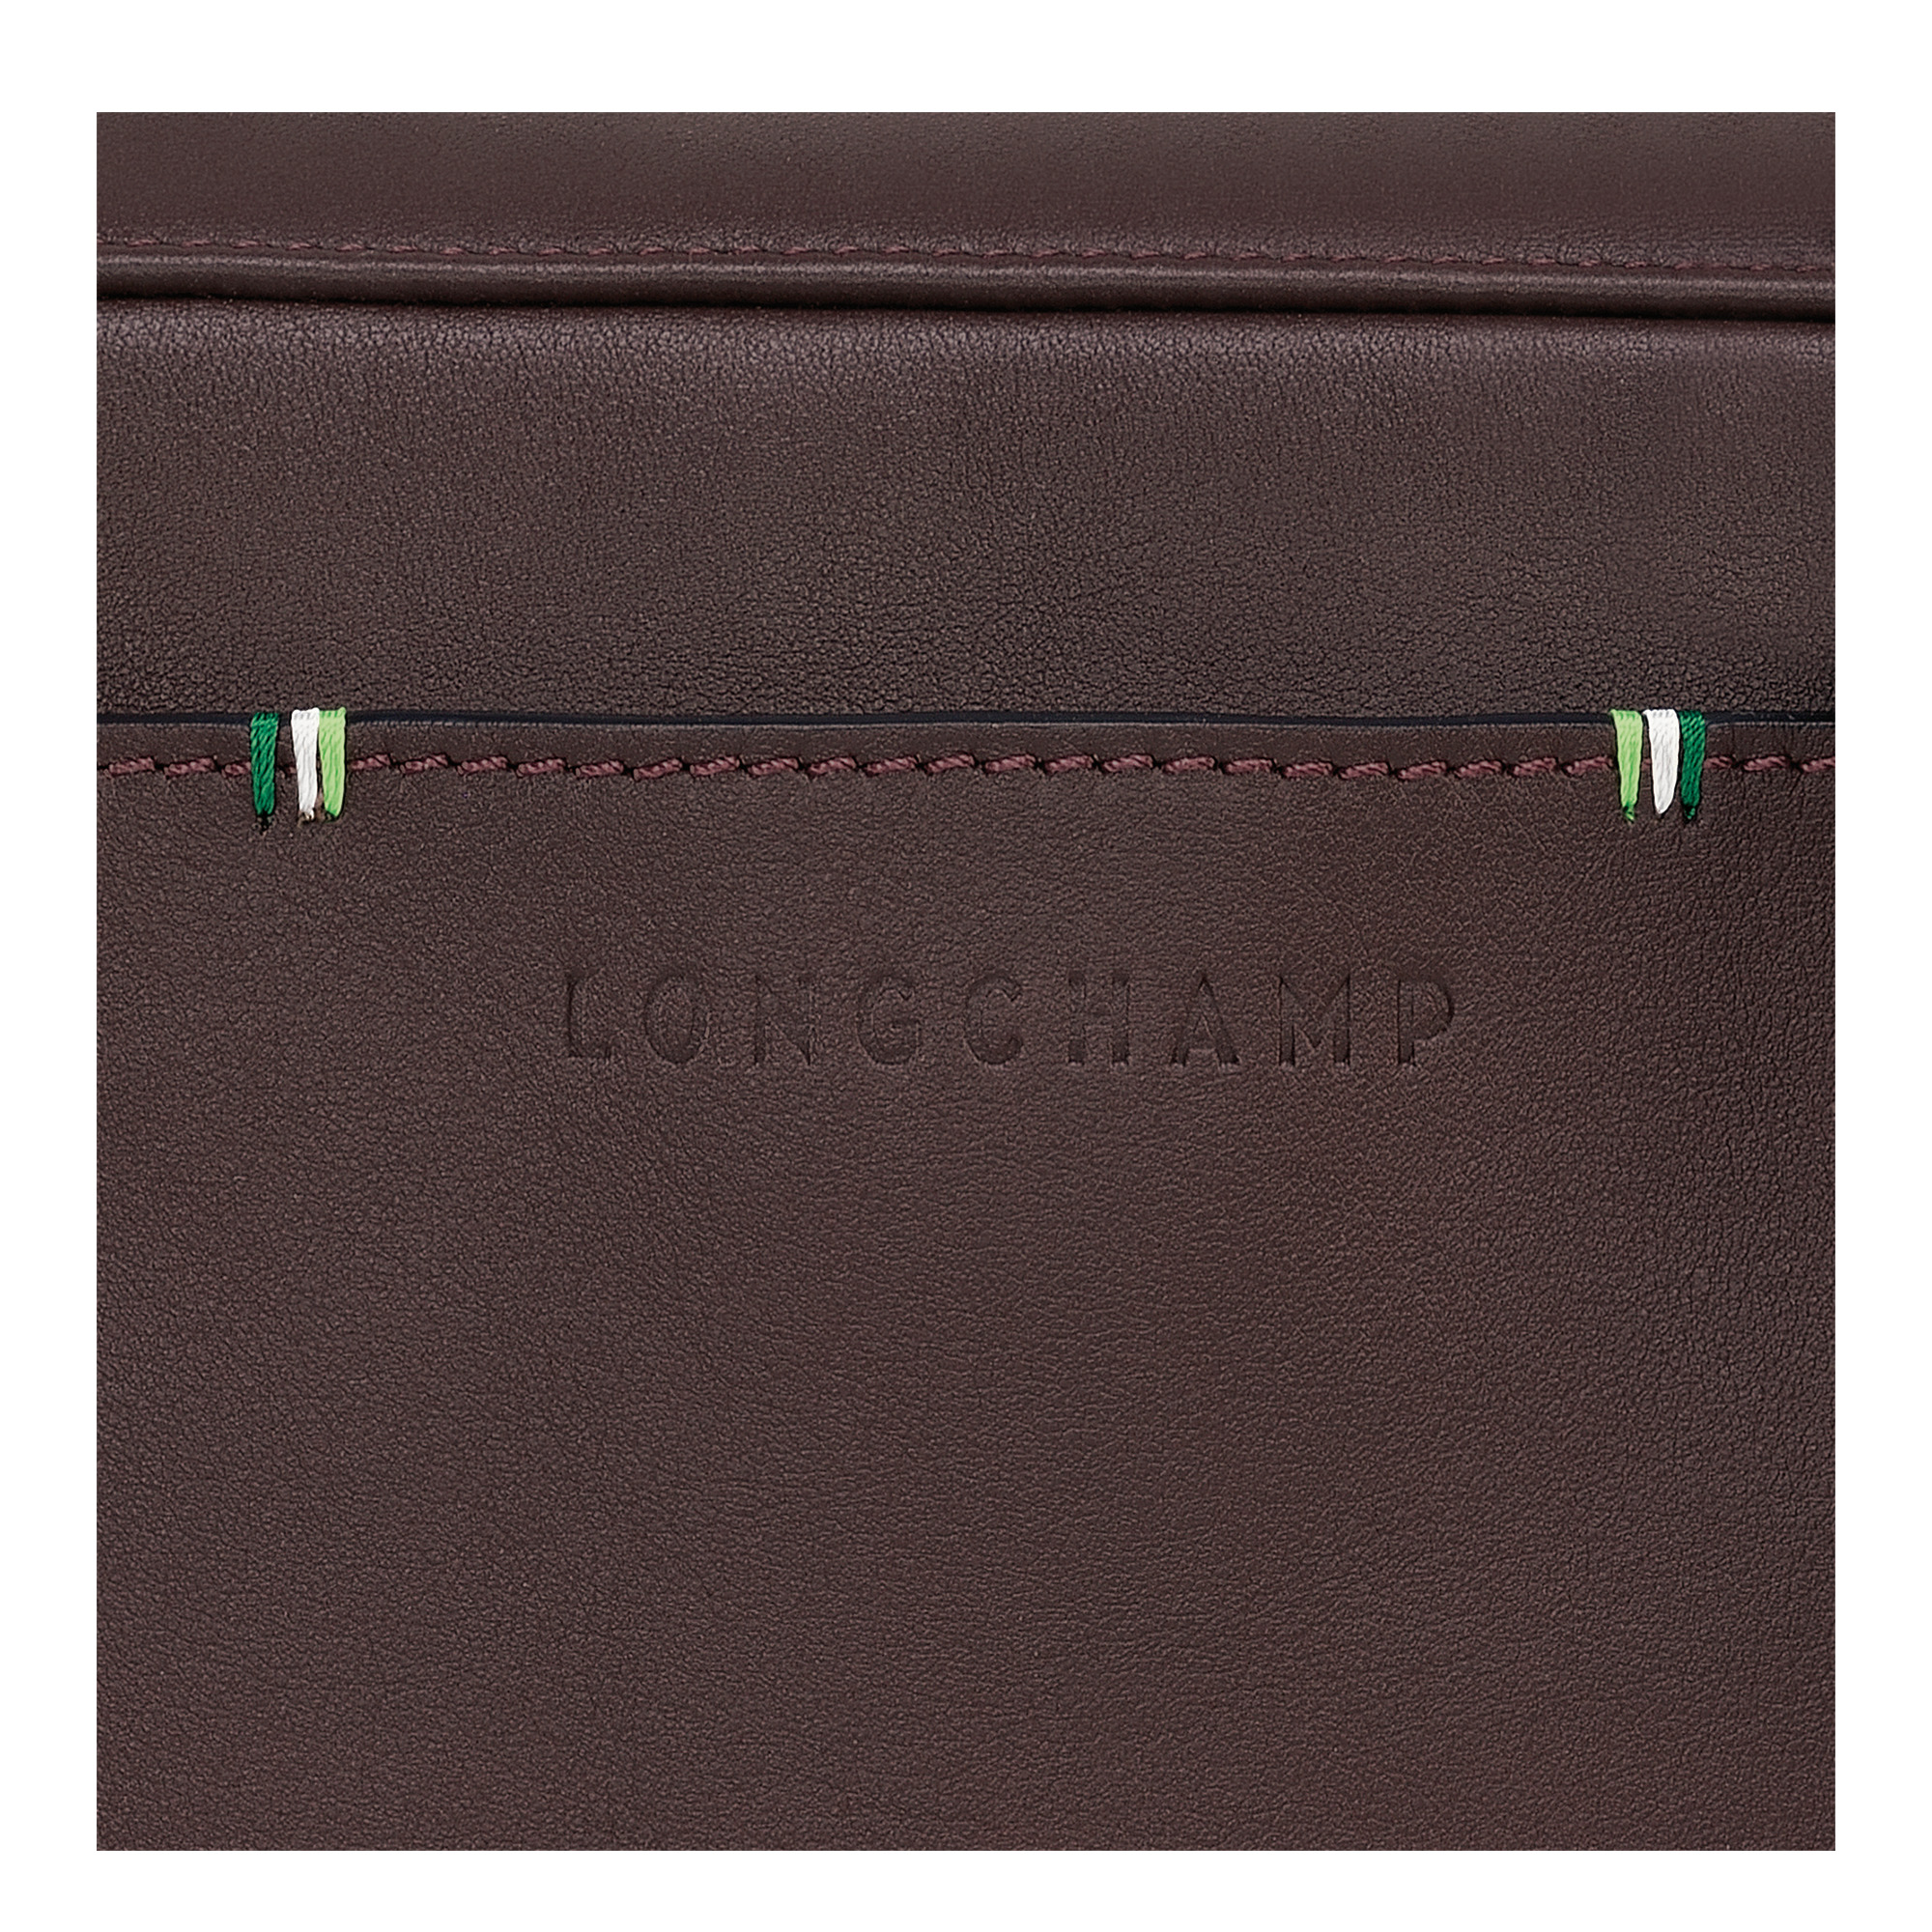 Longchamp sur Seine Camera bag Mocha - Leather - 4